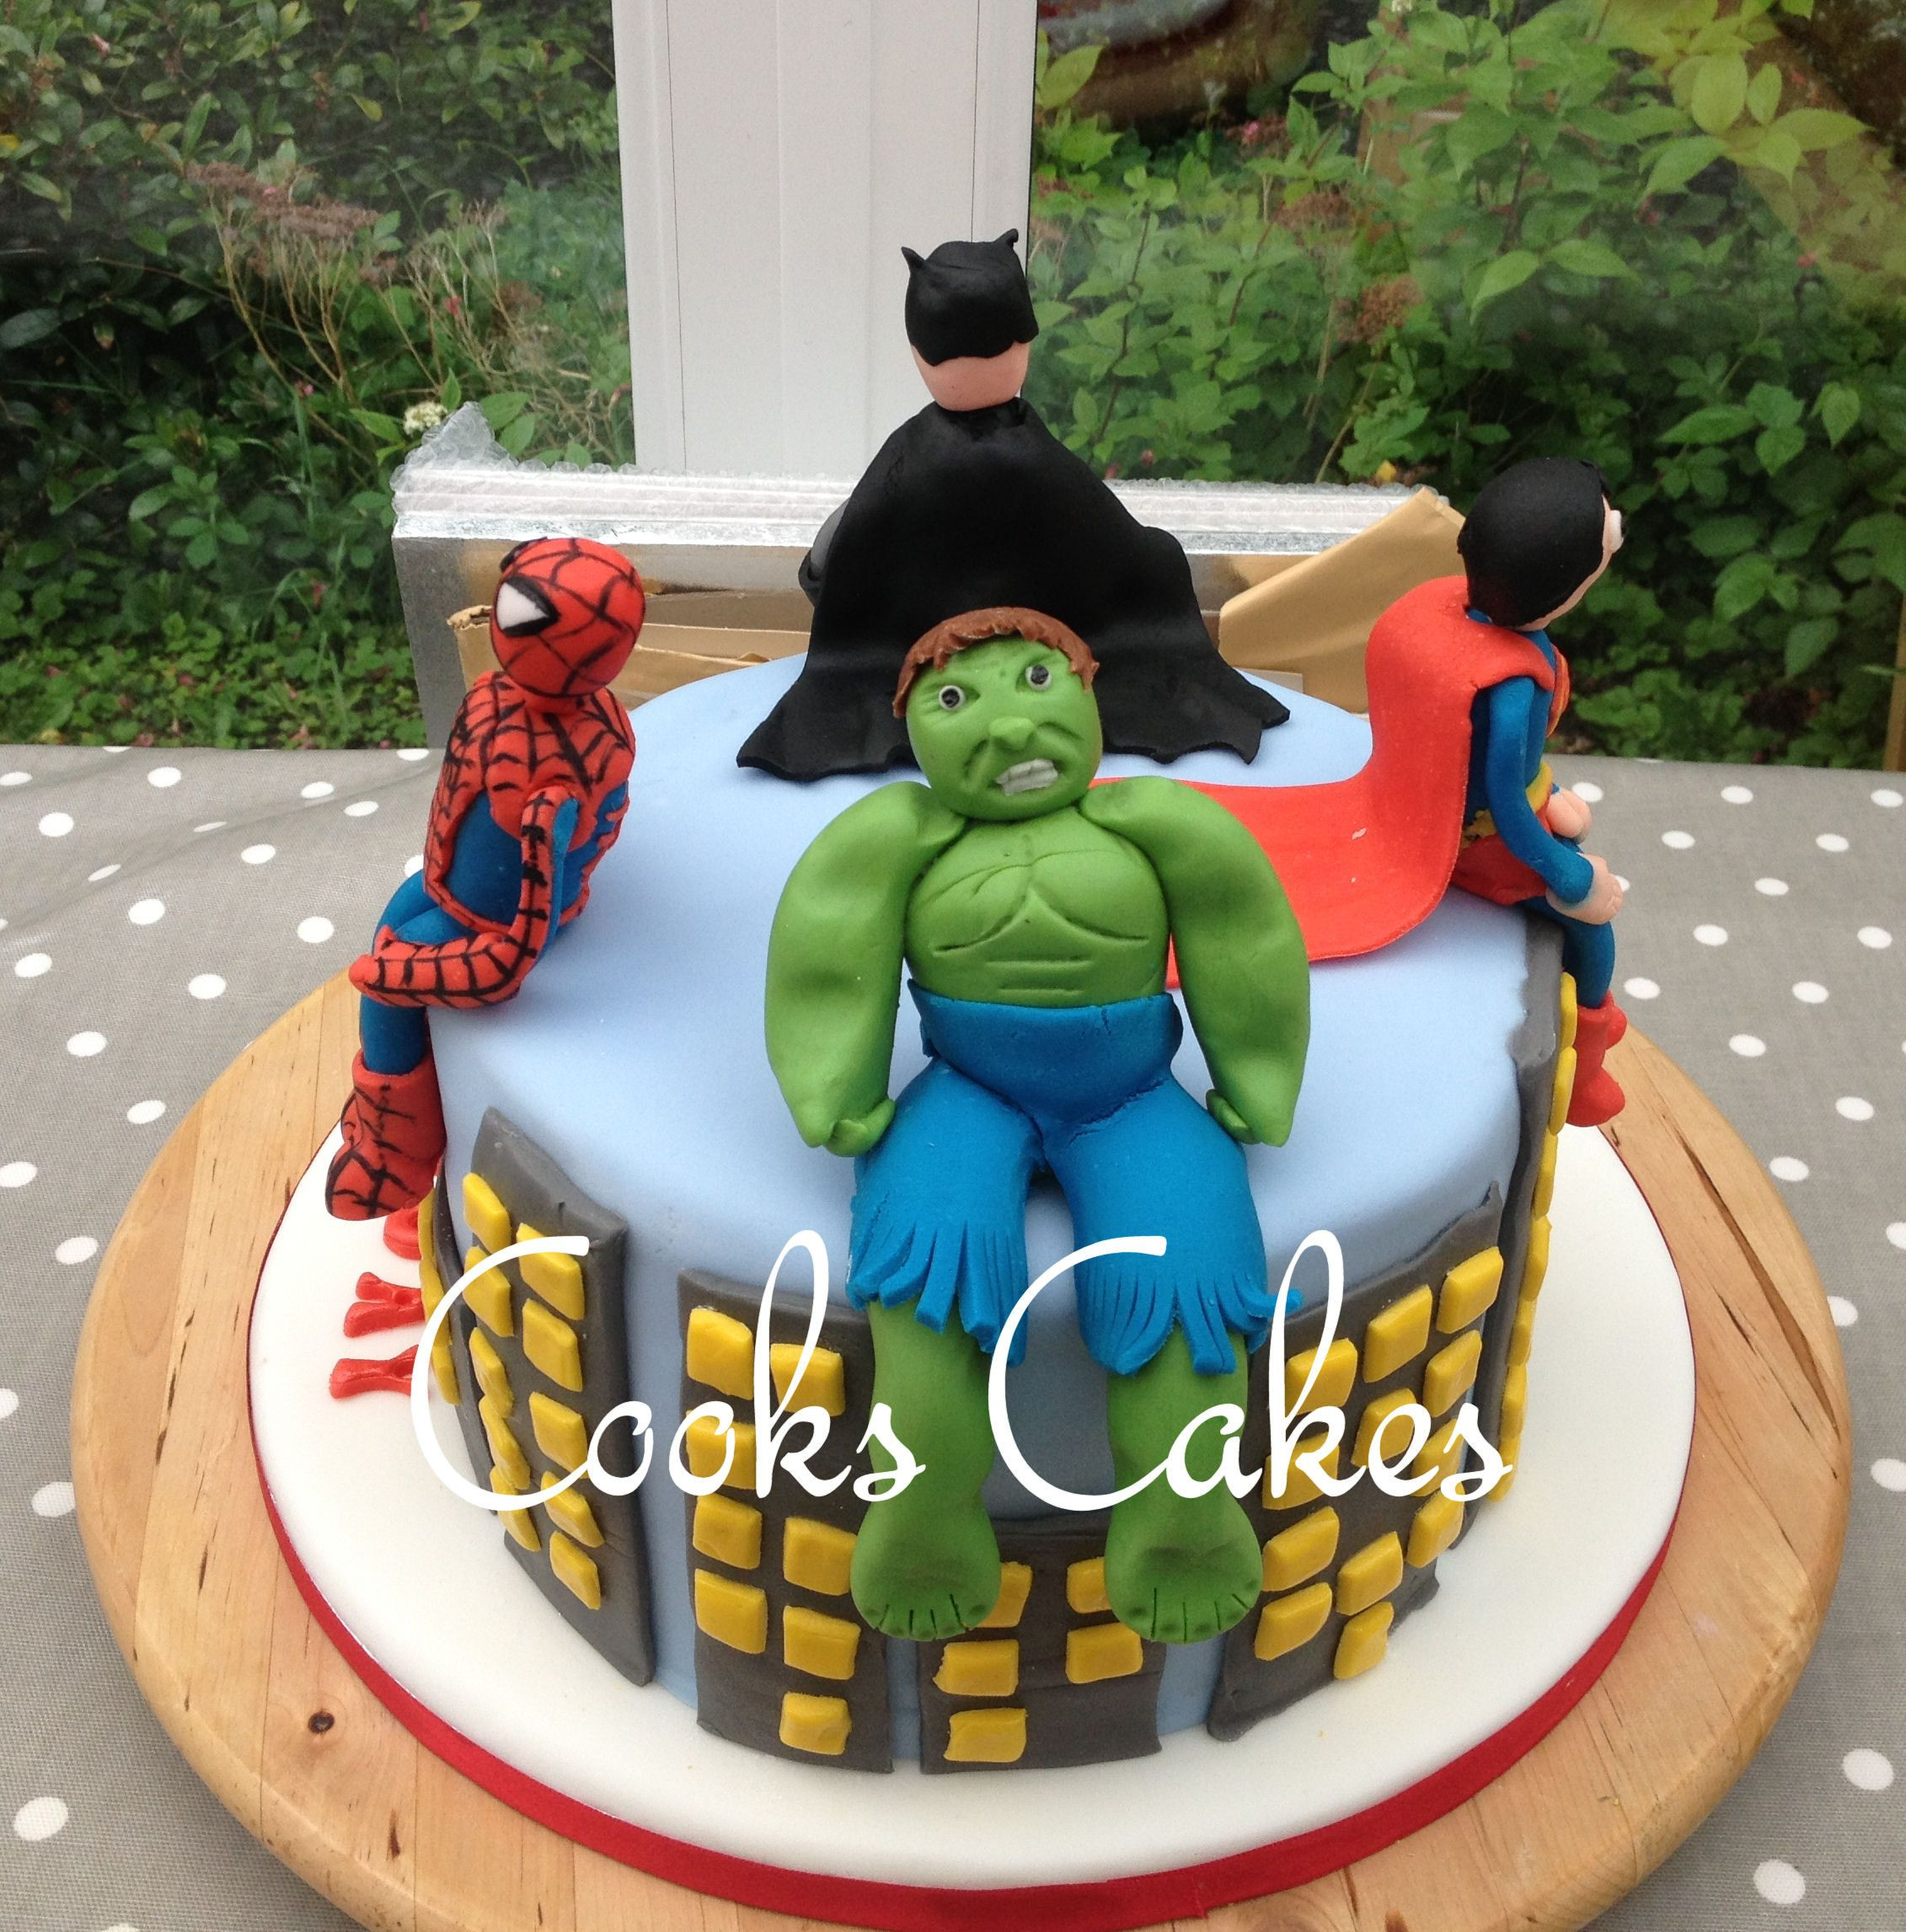 Batman Birthday Party Ideas 4 Year Old
 Birthday cake for a 4 year old boy Superheros Batman